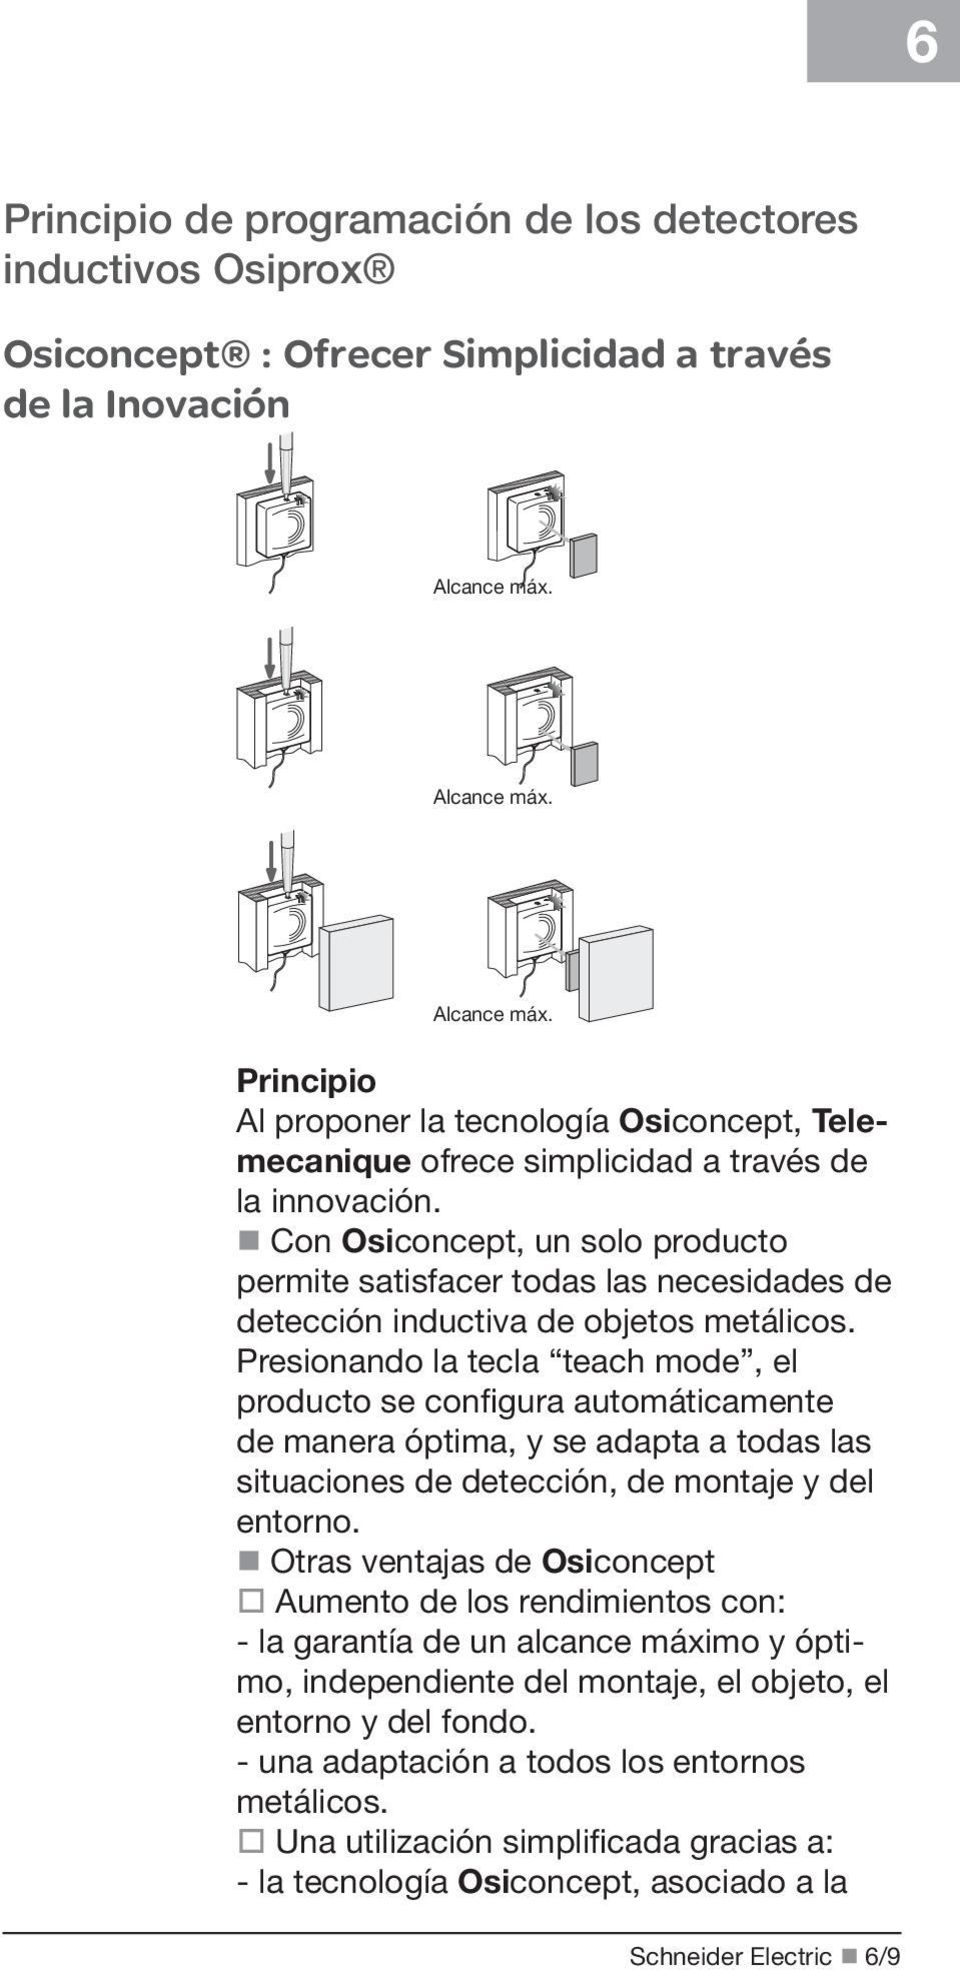 on Osiconcept, un solo producto permite satisfacer todas las necesidades de detección inductiva de objetos metálicos.